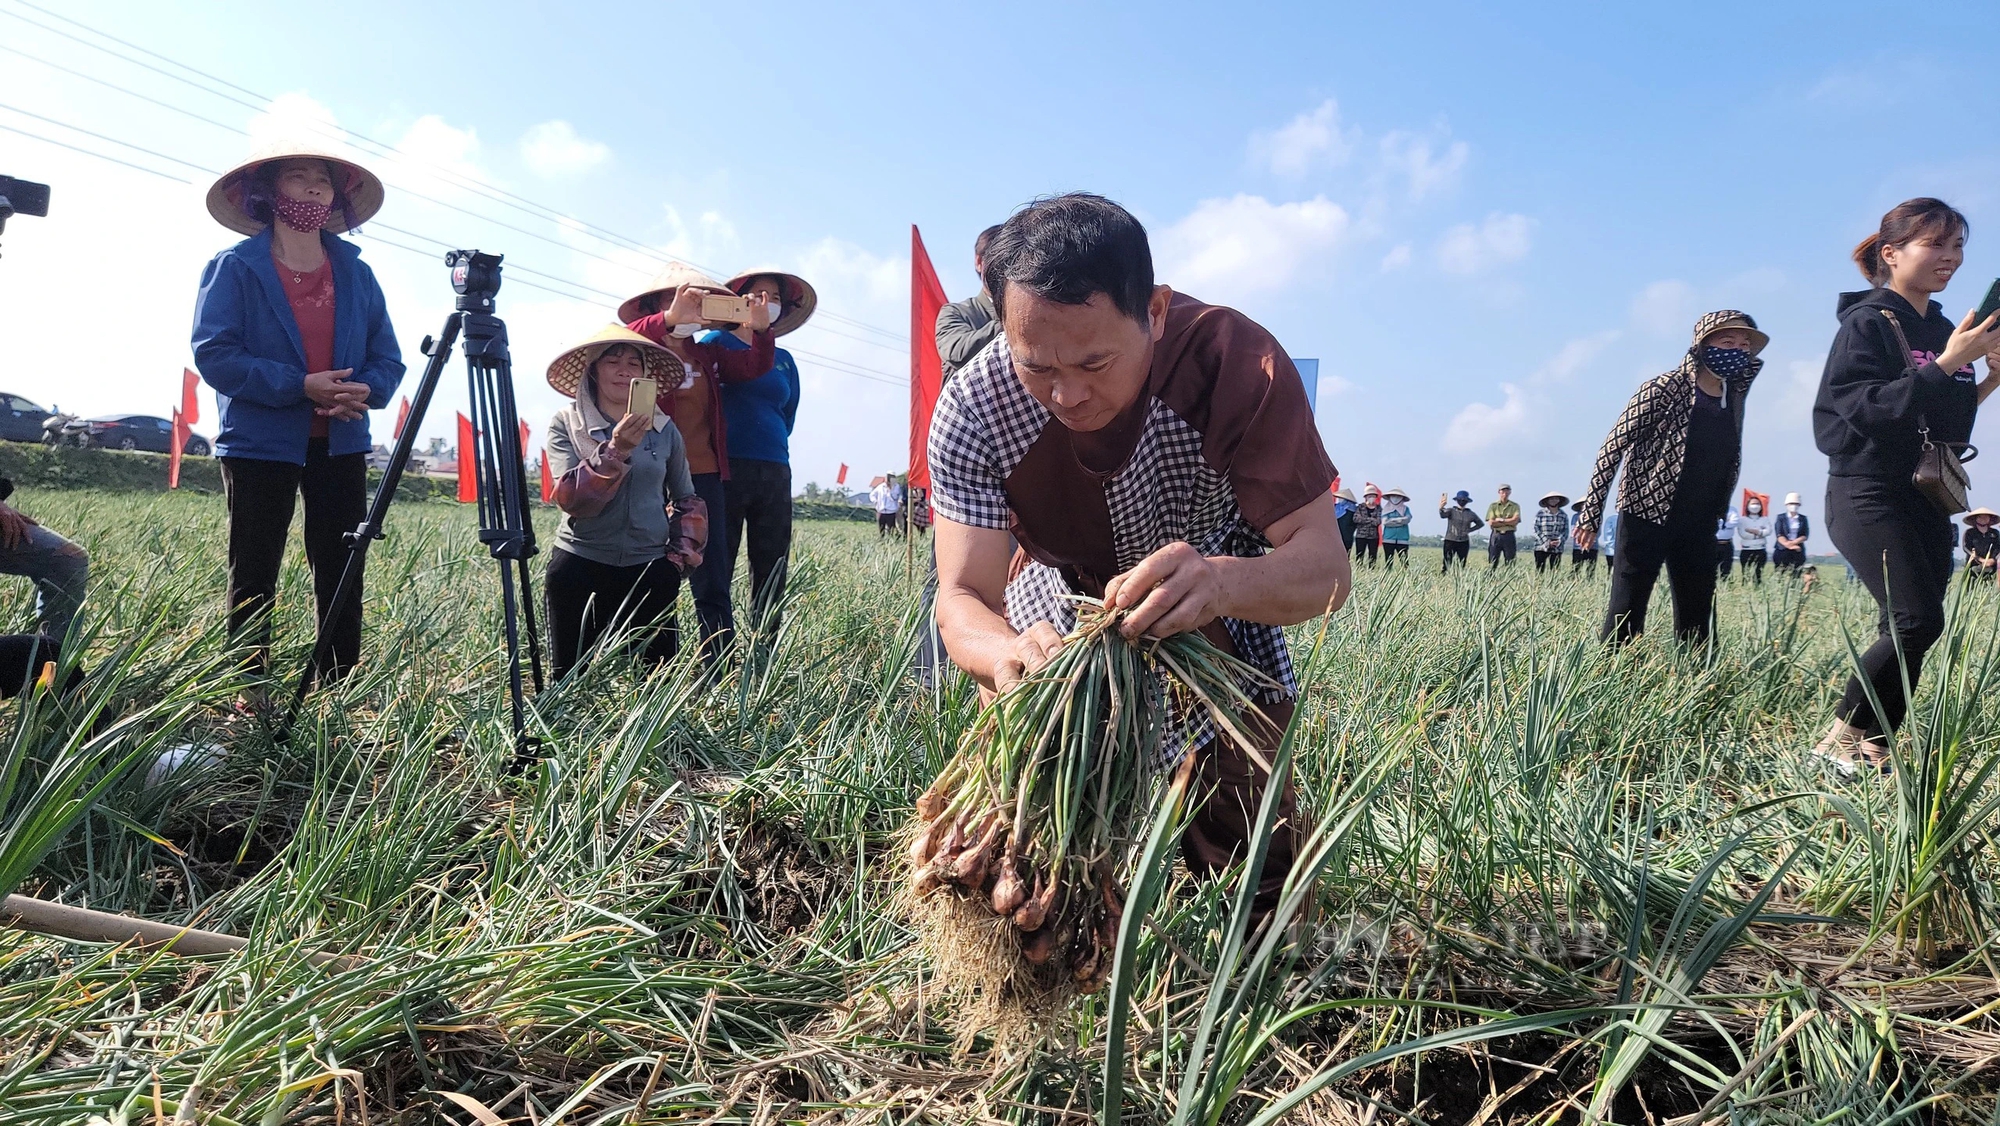 Bộ trưởng Lê Minh Hoan, Bí thư Tỉnh ủy Hải Dương Trần Đức Thắng xuống đồng cổ vũ nông dân thi nhổ hành, tỏi- Ảnh 5.